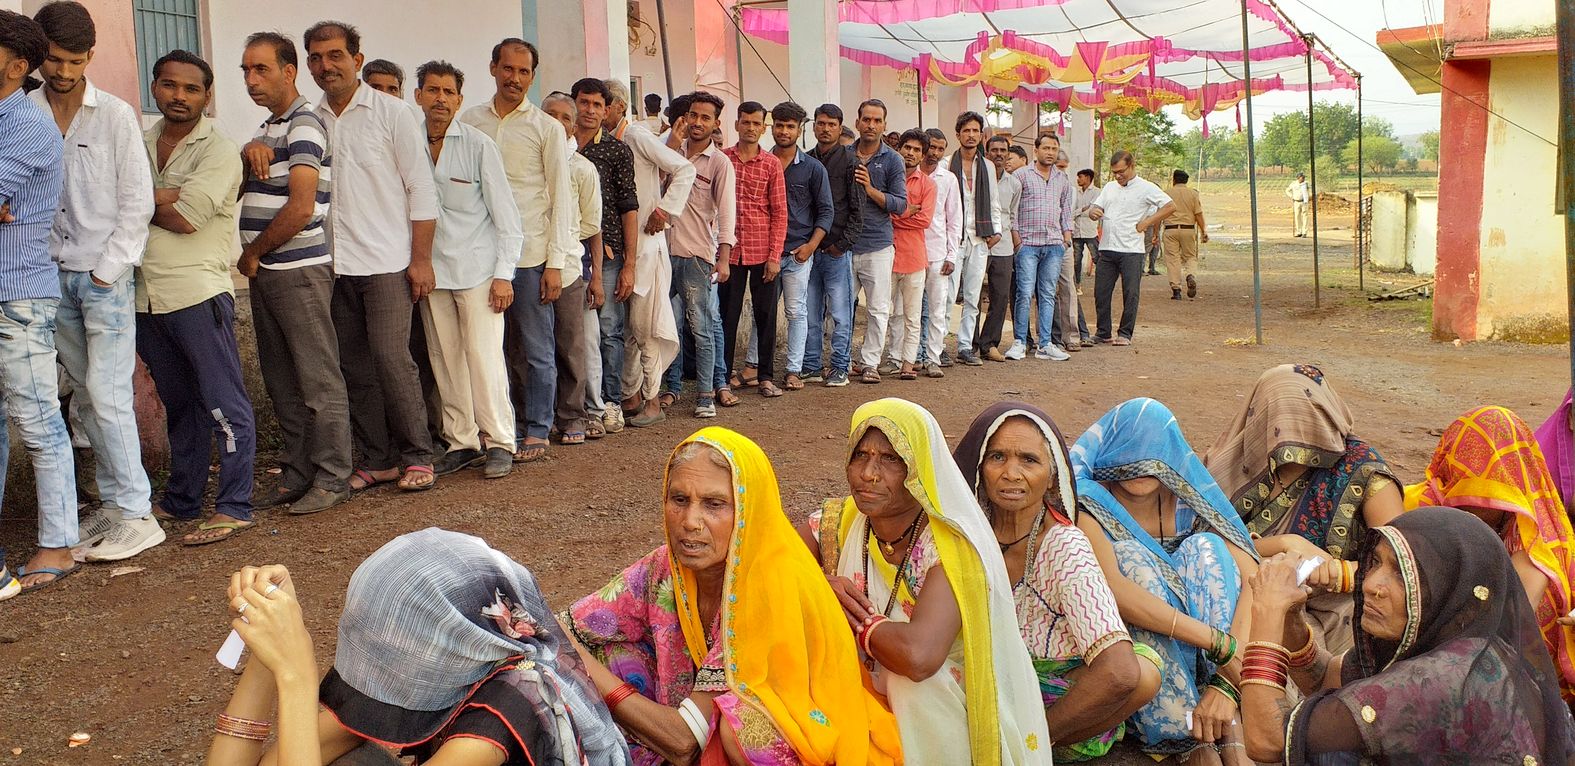 लोकतंत्र का उत्सव-आदिवासी अंचल में मतदान को लेकर जबर्दस्त उत्साह, केंद्रों पर लगी कतारें